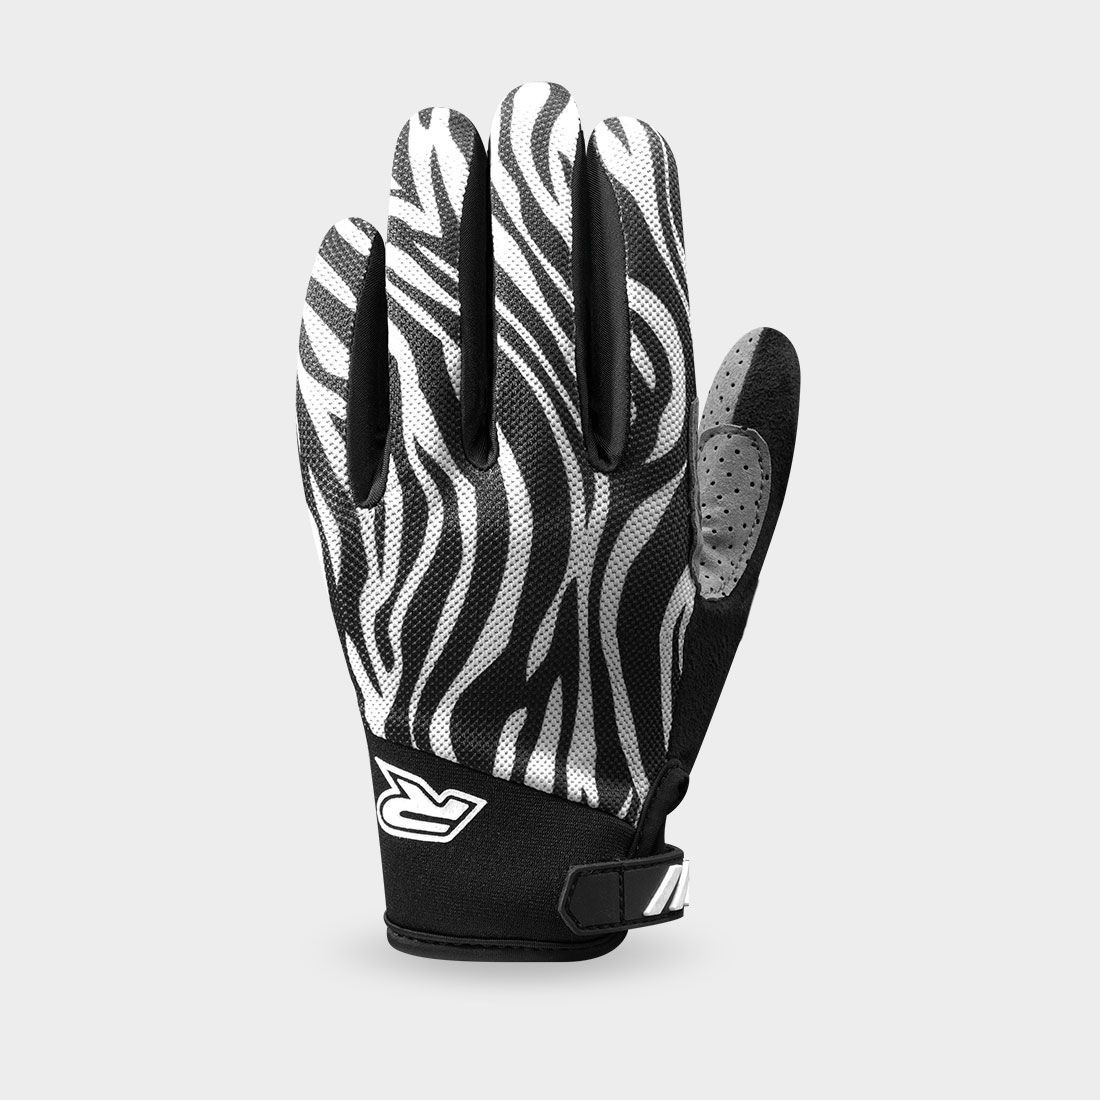 gloves GP STYLE, RACER (black/white)